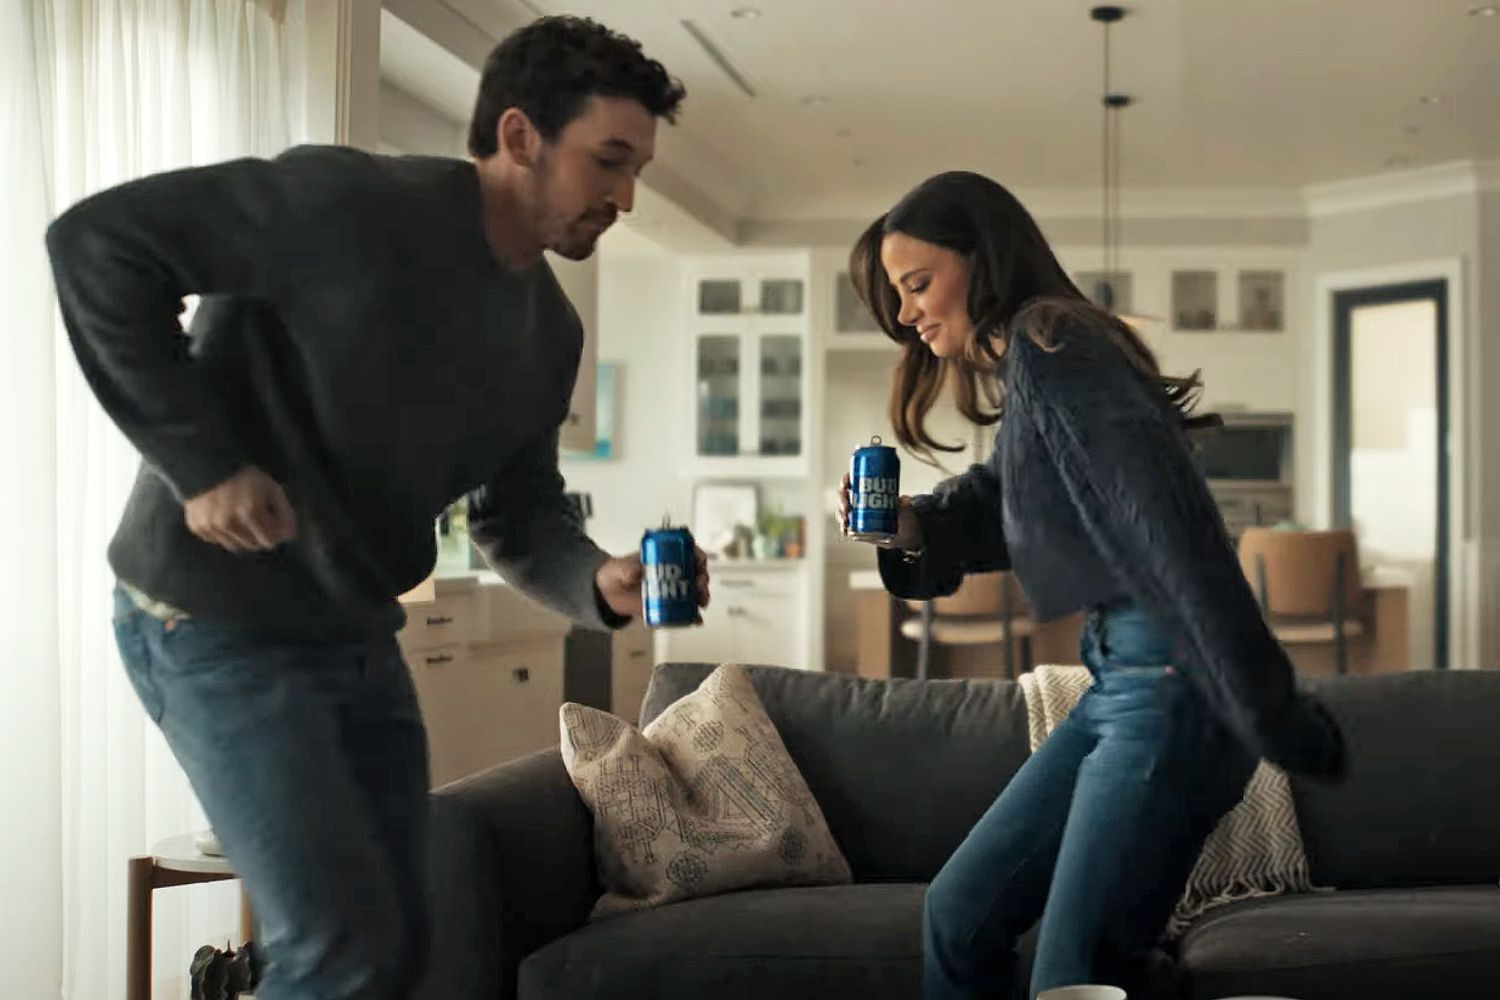 マイルズ テラーと妻のケリーは、バド ライトのスーパー ボウルの広告で家庭生活を「こっそり覗き見る」